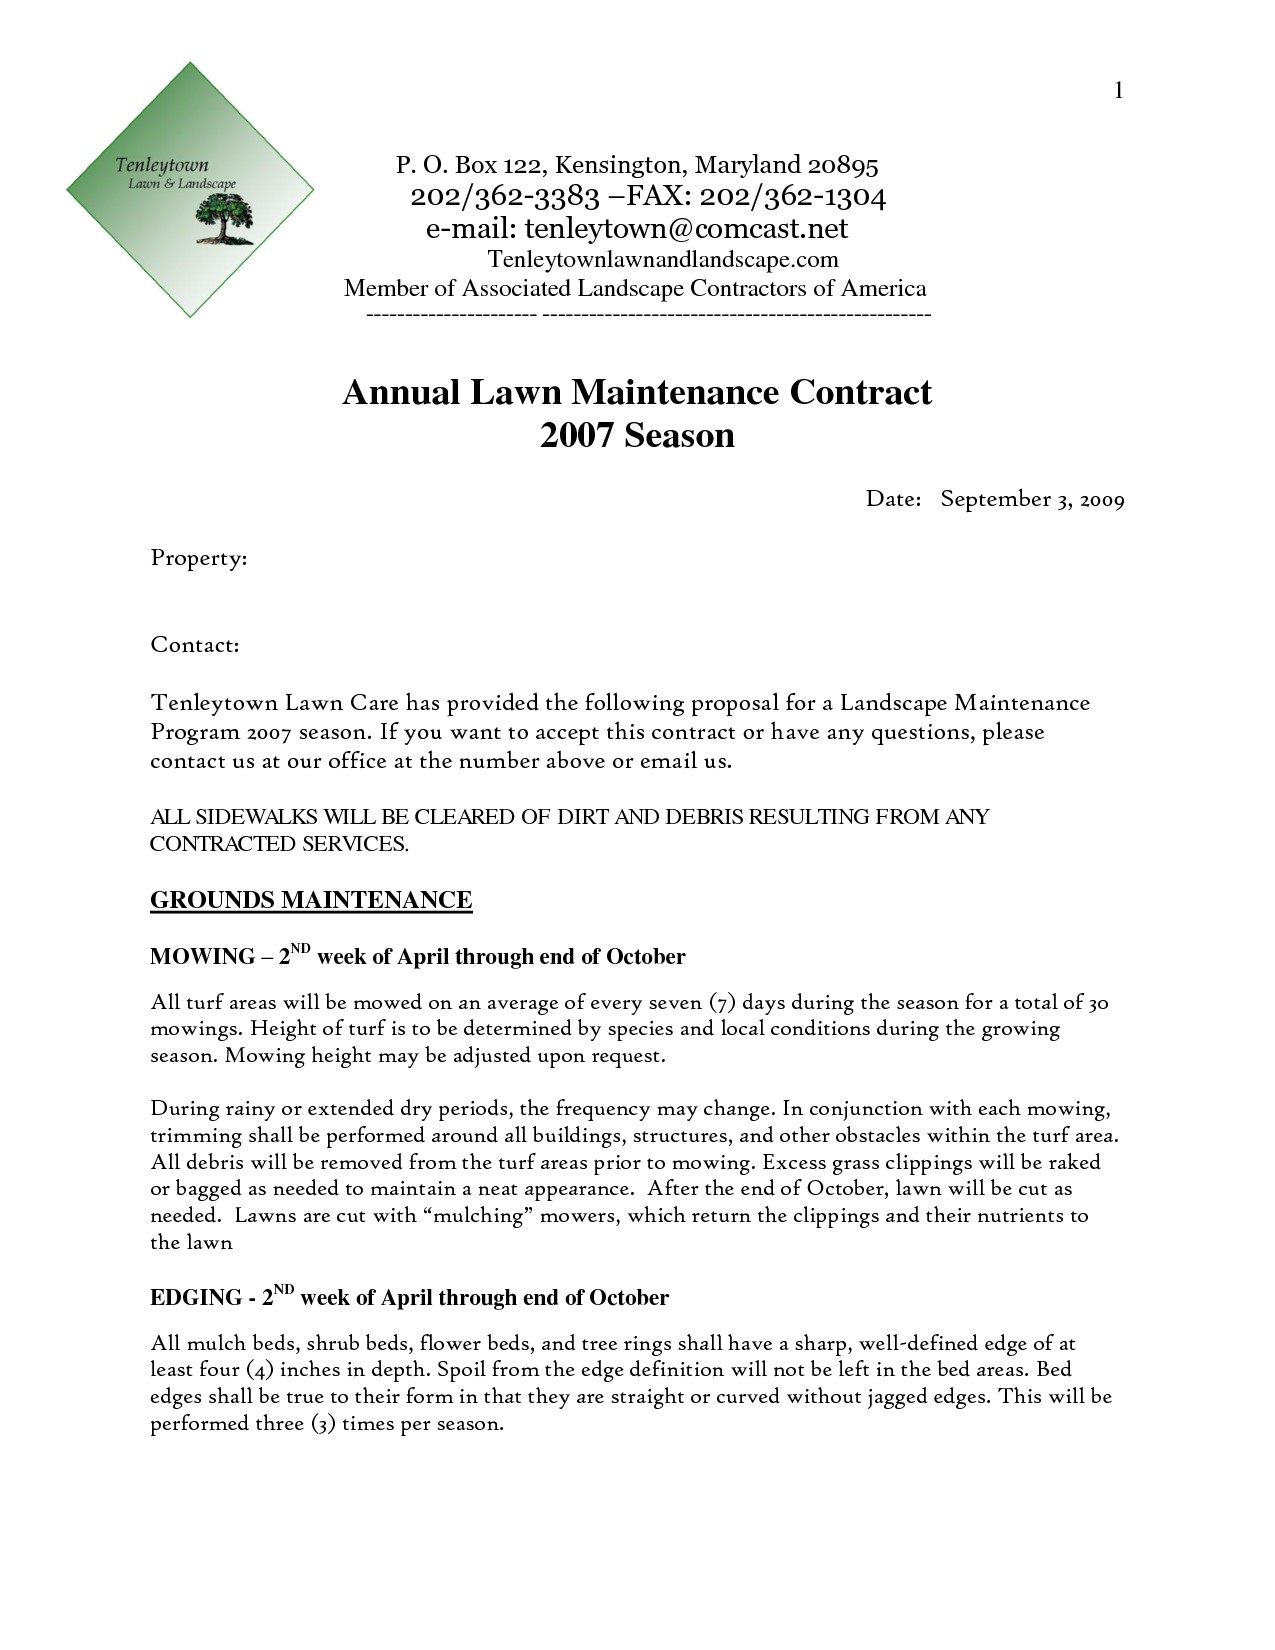 Landscape Design Proposal Template Construction Estimator Cover Letter 8 Construction Cover